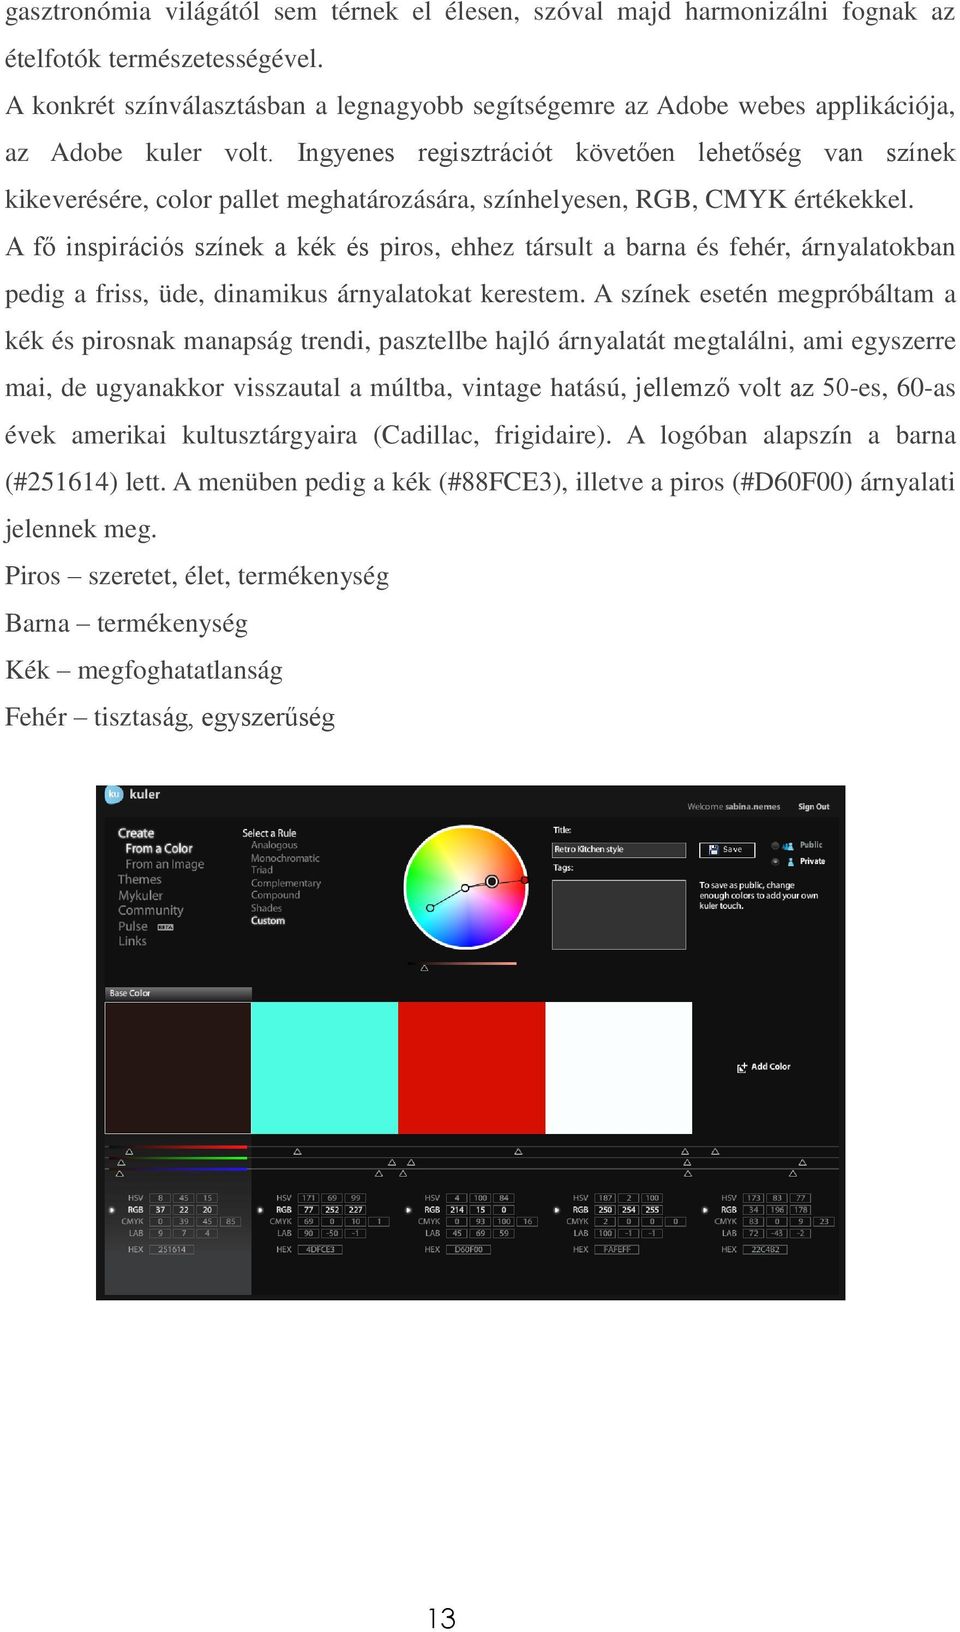 Ingyenes regisztrációt követően lehetőség van színek kikeverésére, color pallet meghatározására, színhelyesen, RGB, CMYK értékekkel.